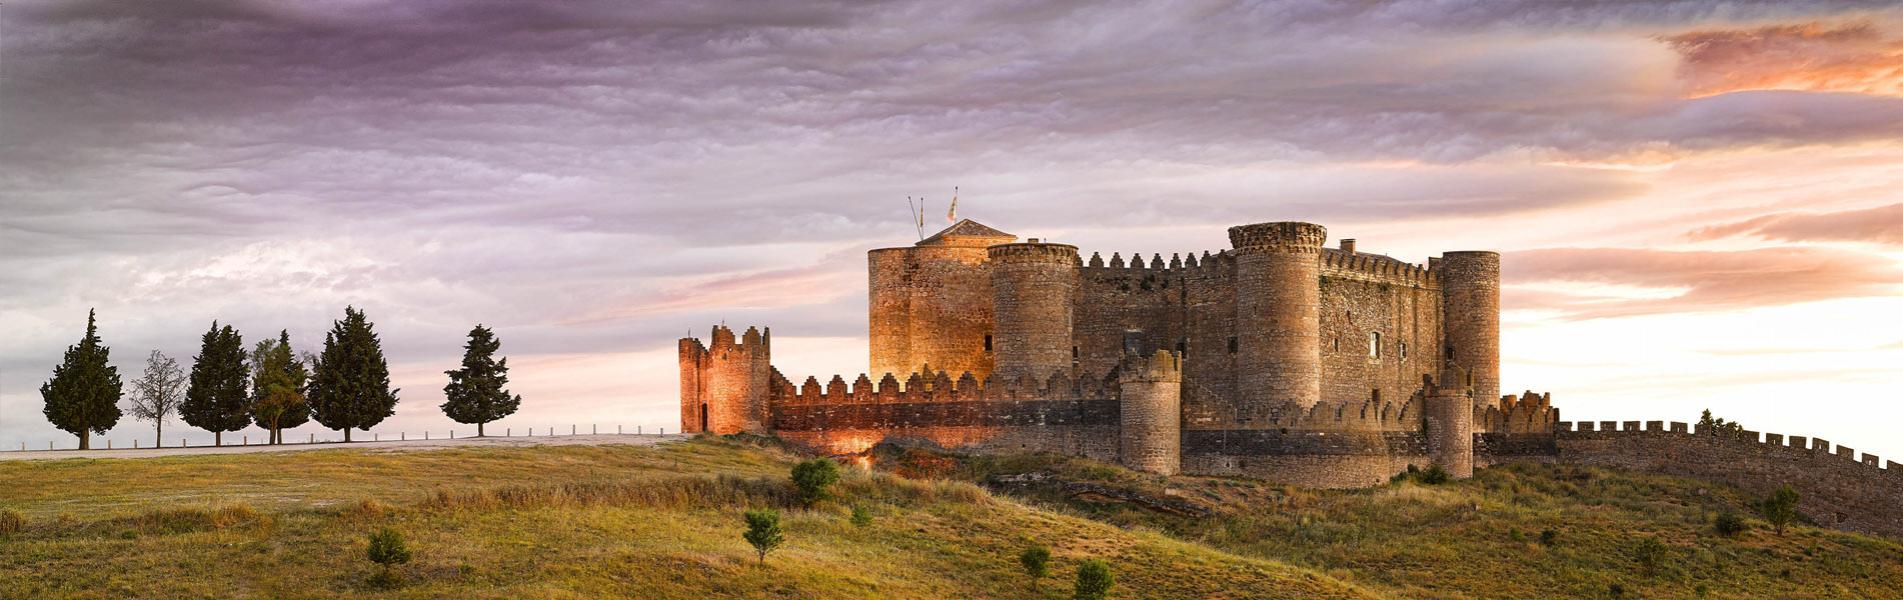 15-surprising-facts-about-castillo-de-belmonte